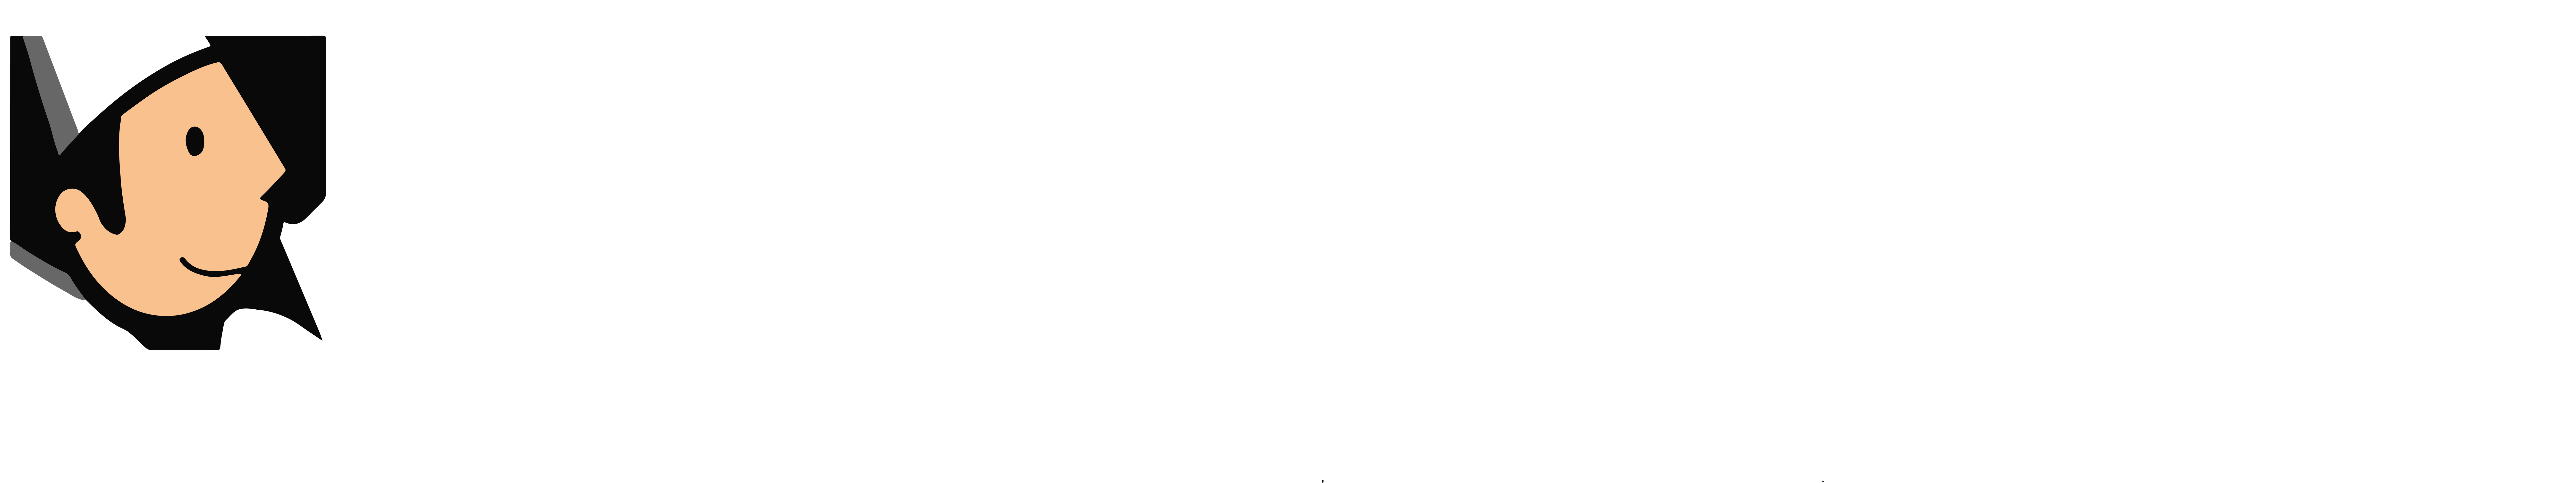 logo wholly stromboli